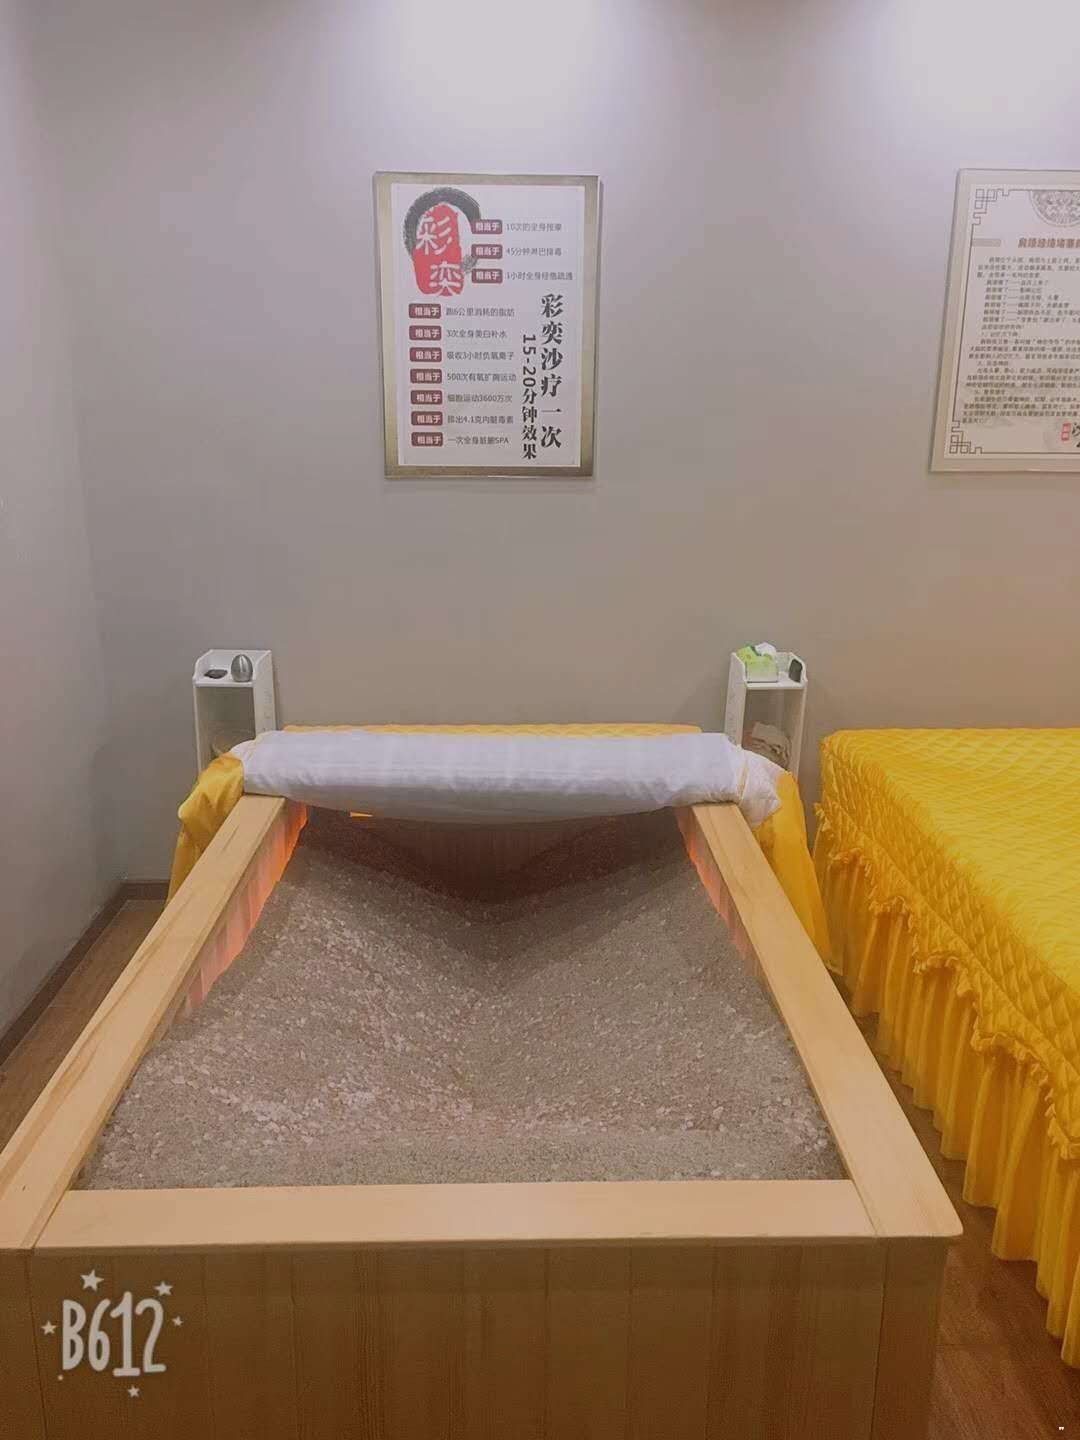 沙疗床价格 ,沙灸床厂家|_厂家直销沙疗床 沙灸床 沙疗设备